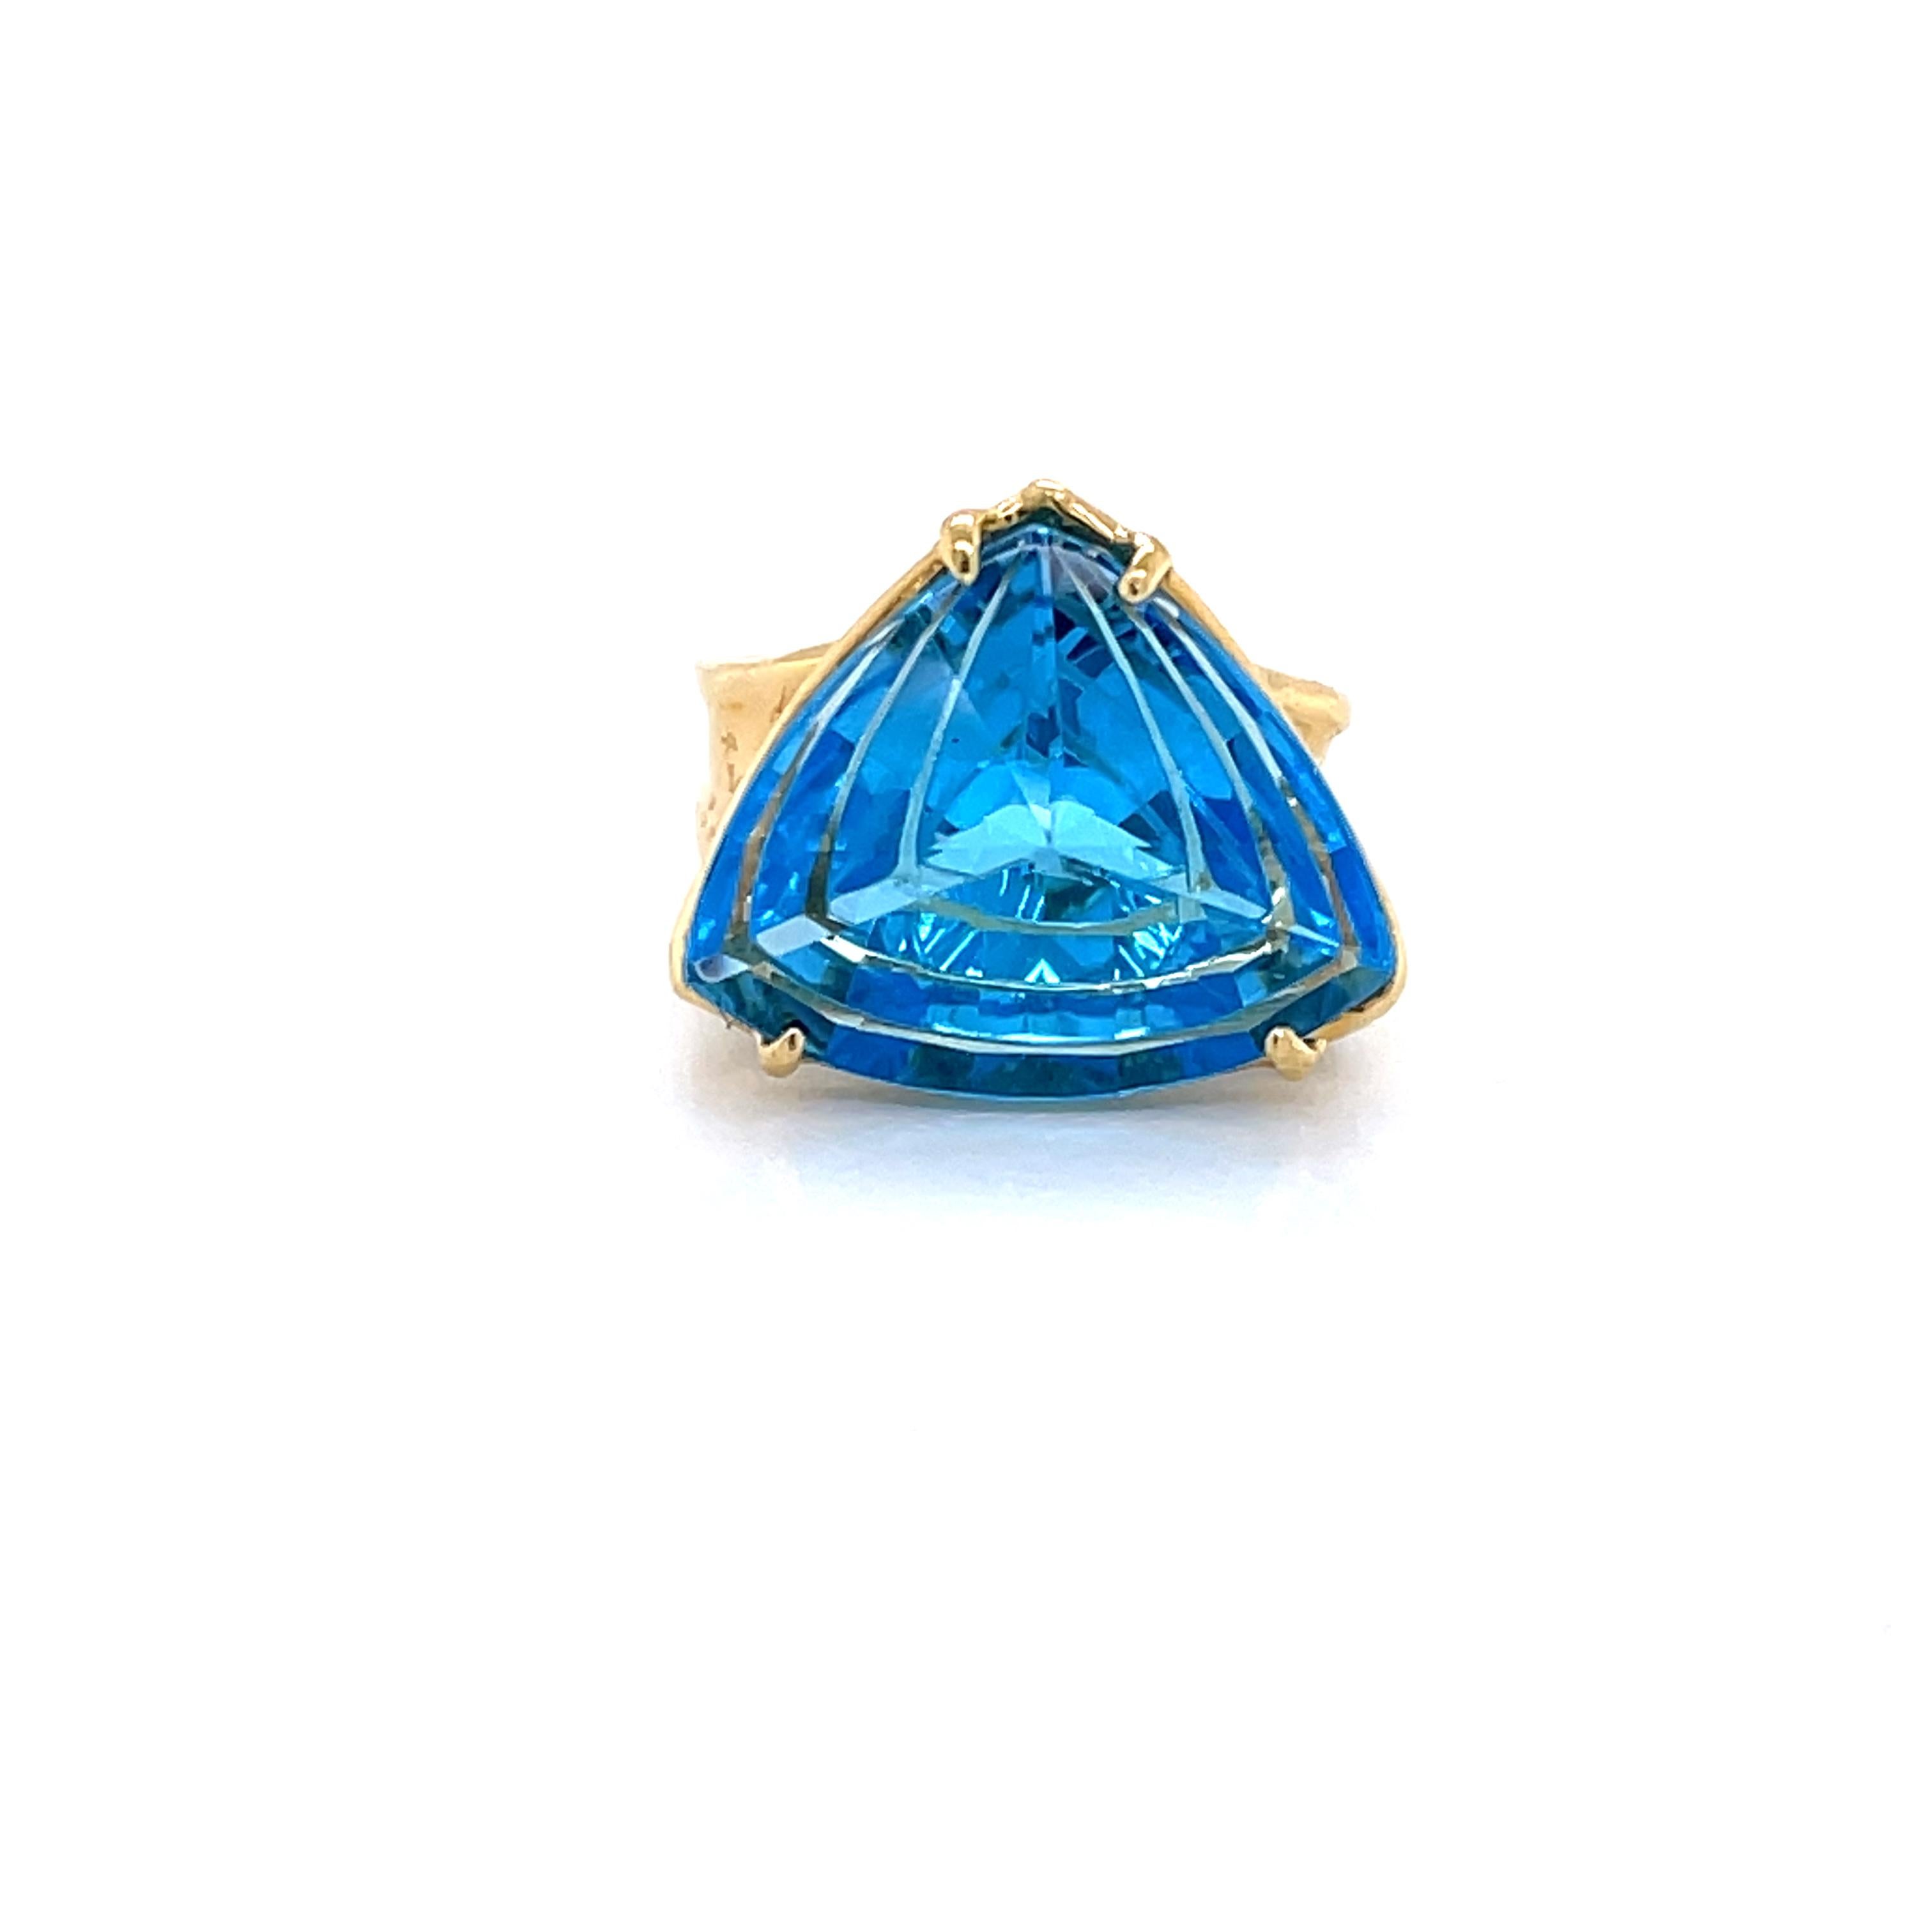 Mettez en valeur cette topaze bleue fantaisie, parfaite pour une bague de petit doigt ou un annulaire. La forme unique de la pierre est présentée dans une monture flottante afin d'apprécier la profondeur de sa couleur. La bague est composée d'un